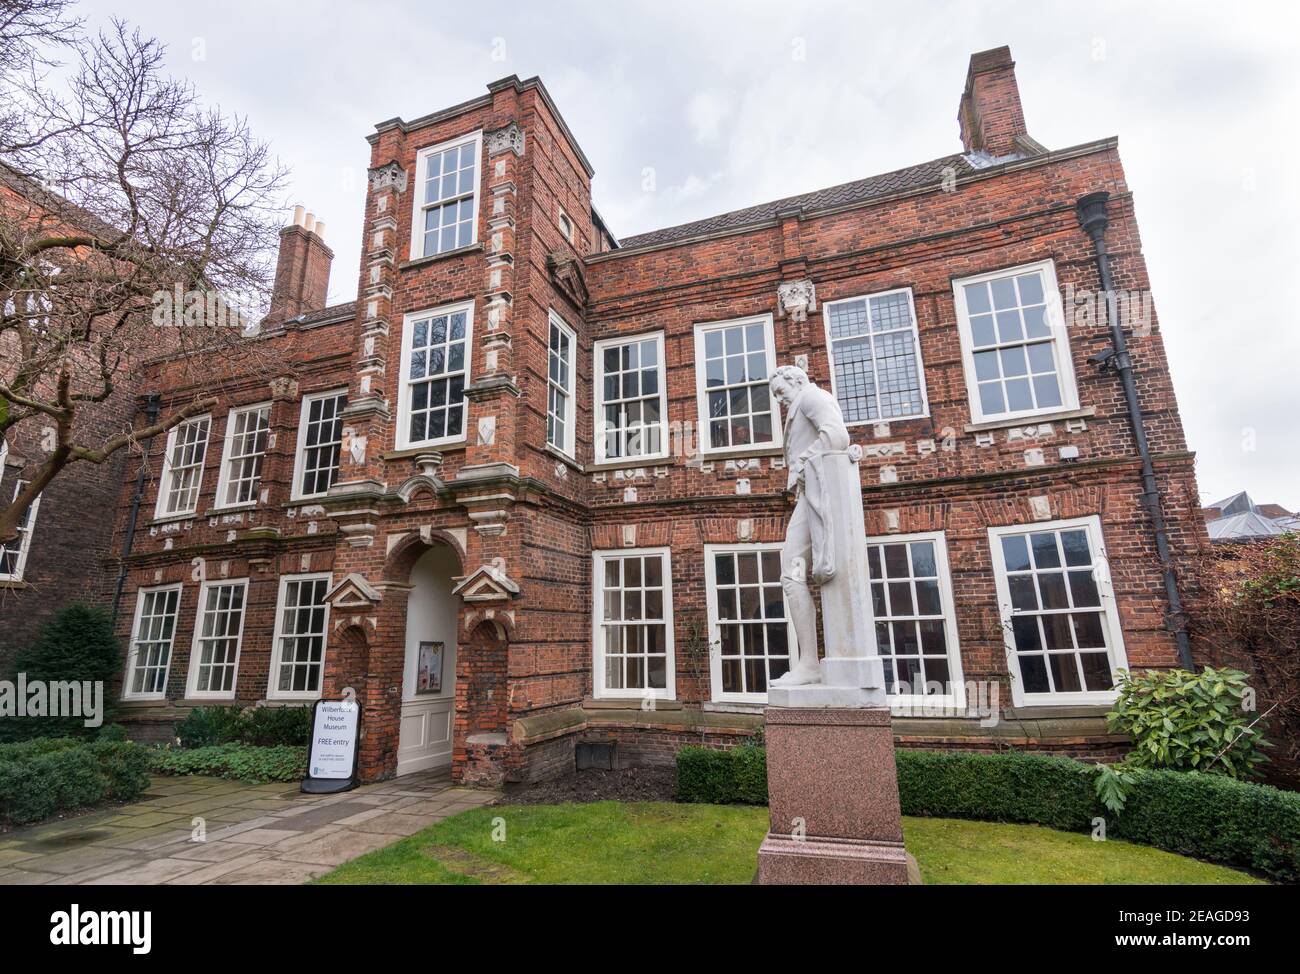 Wilberforce House (Geburtsort von William Wilberforce) jetzt ein Museum. Vordereingang mit Statue von William Wilberforce. Stockfoto